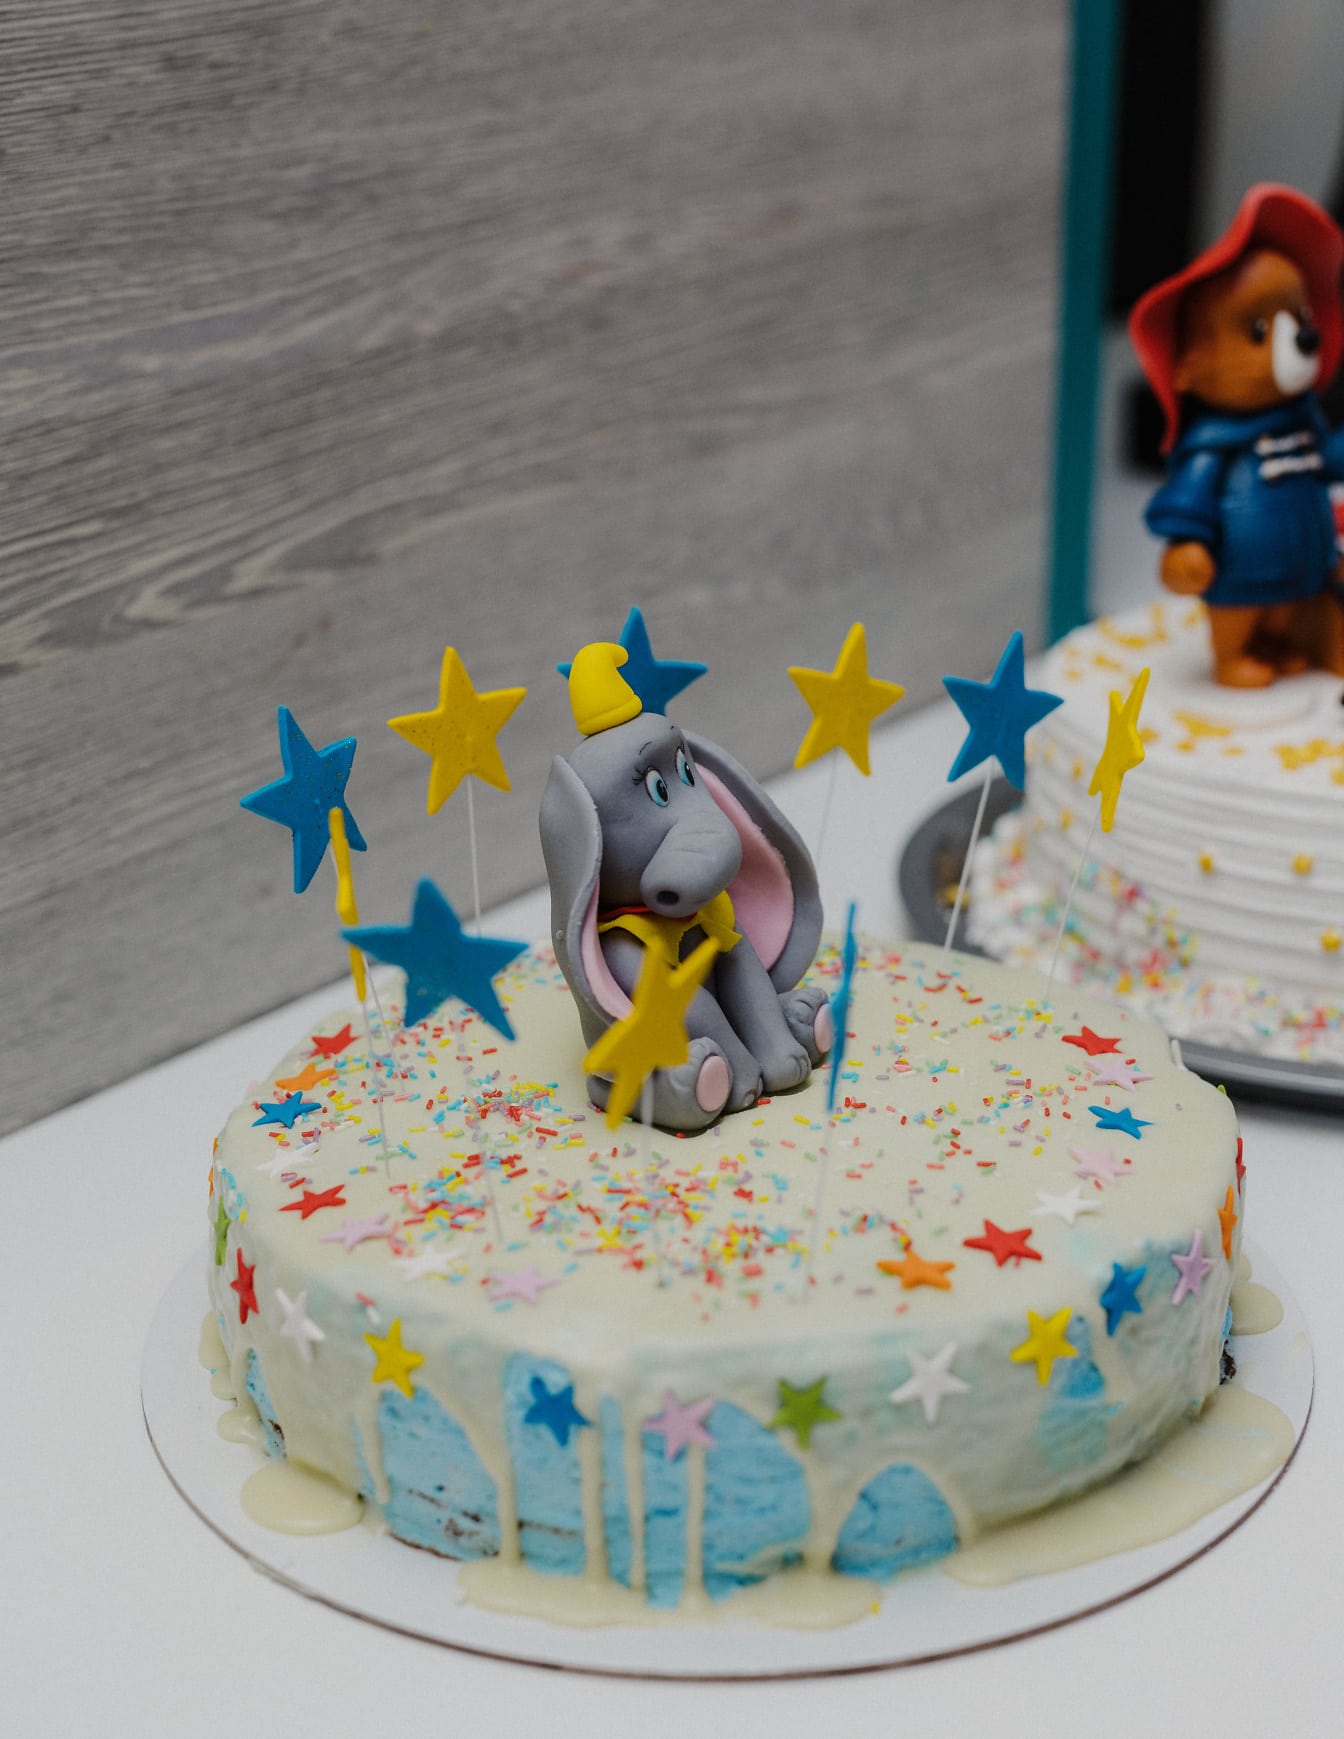 Rođendanska torta s ukrasom slona i plavo-žutim zvijezdama